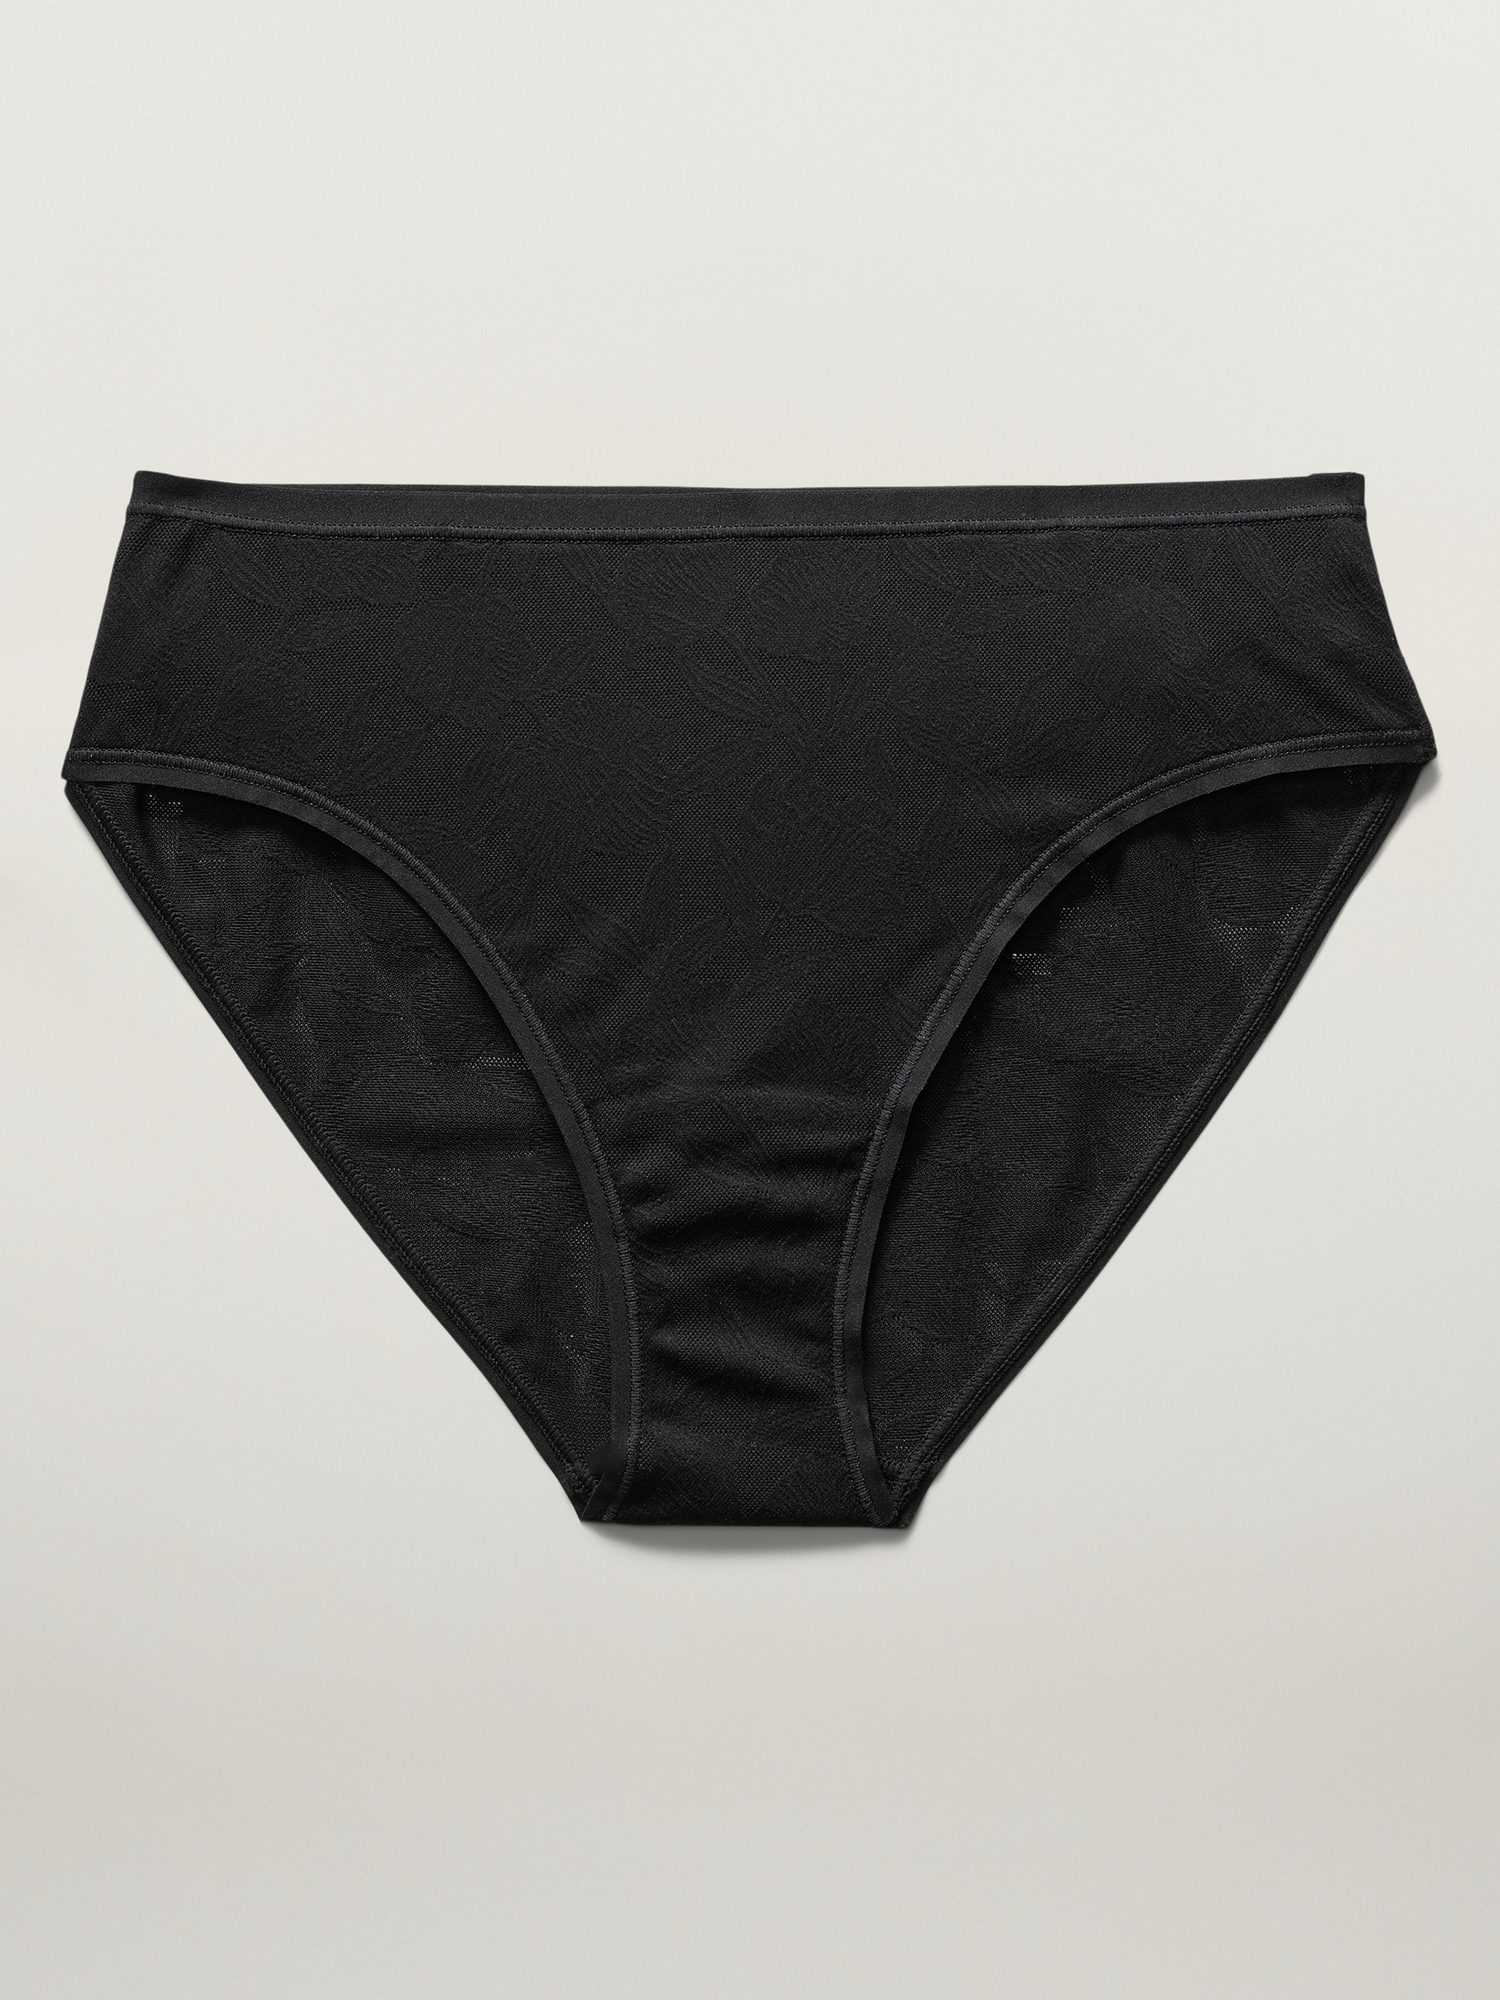 Athleta Ritual Bikini Underwear In Black Lace